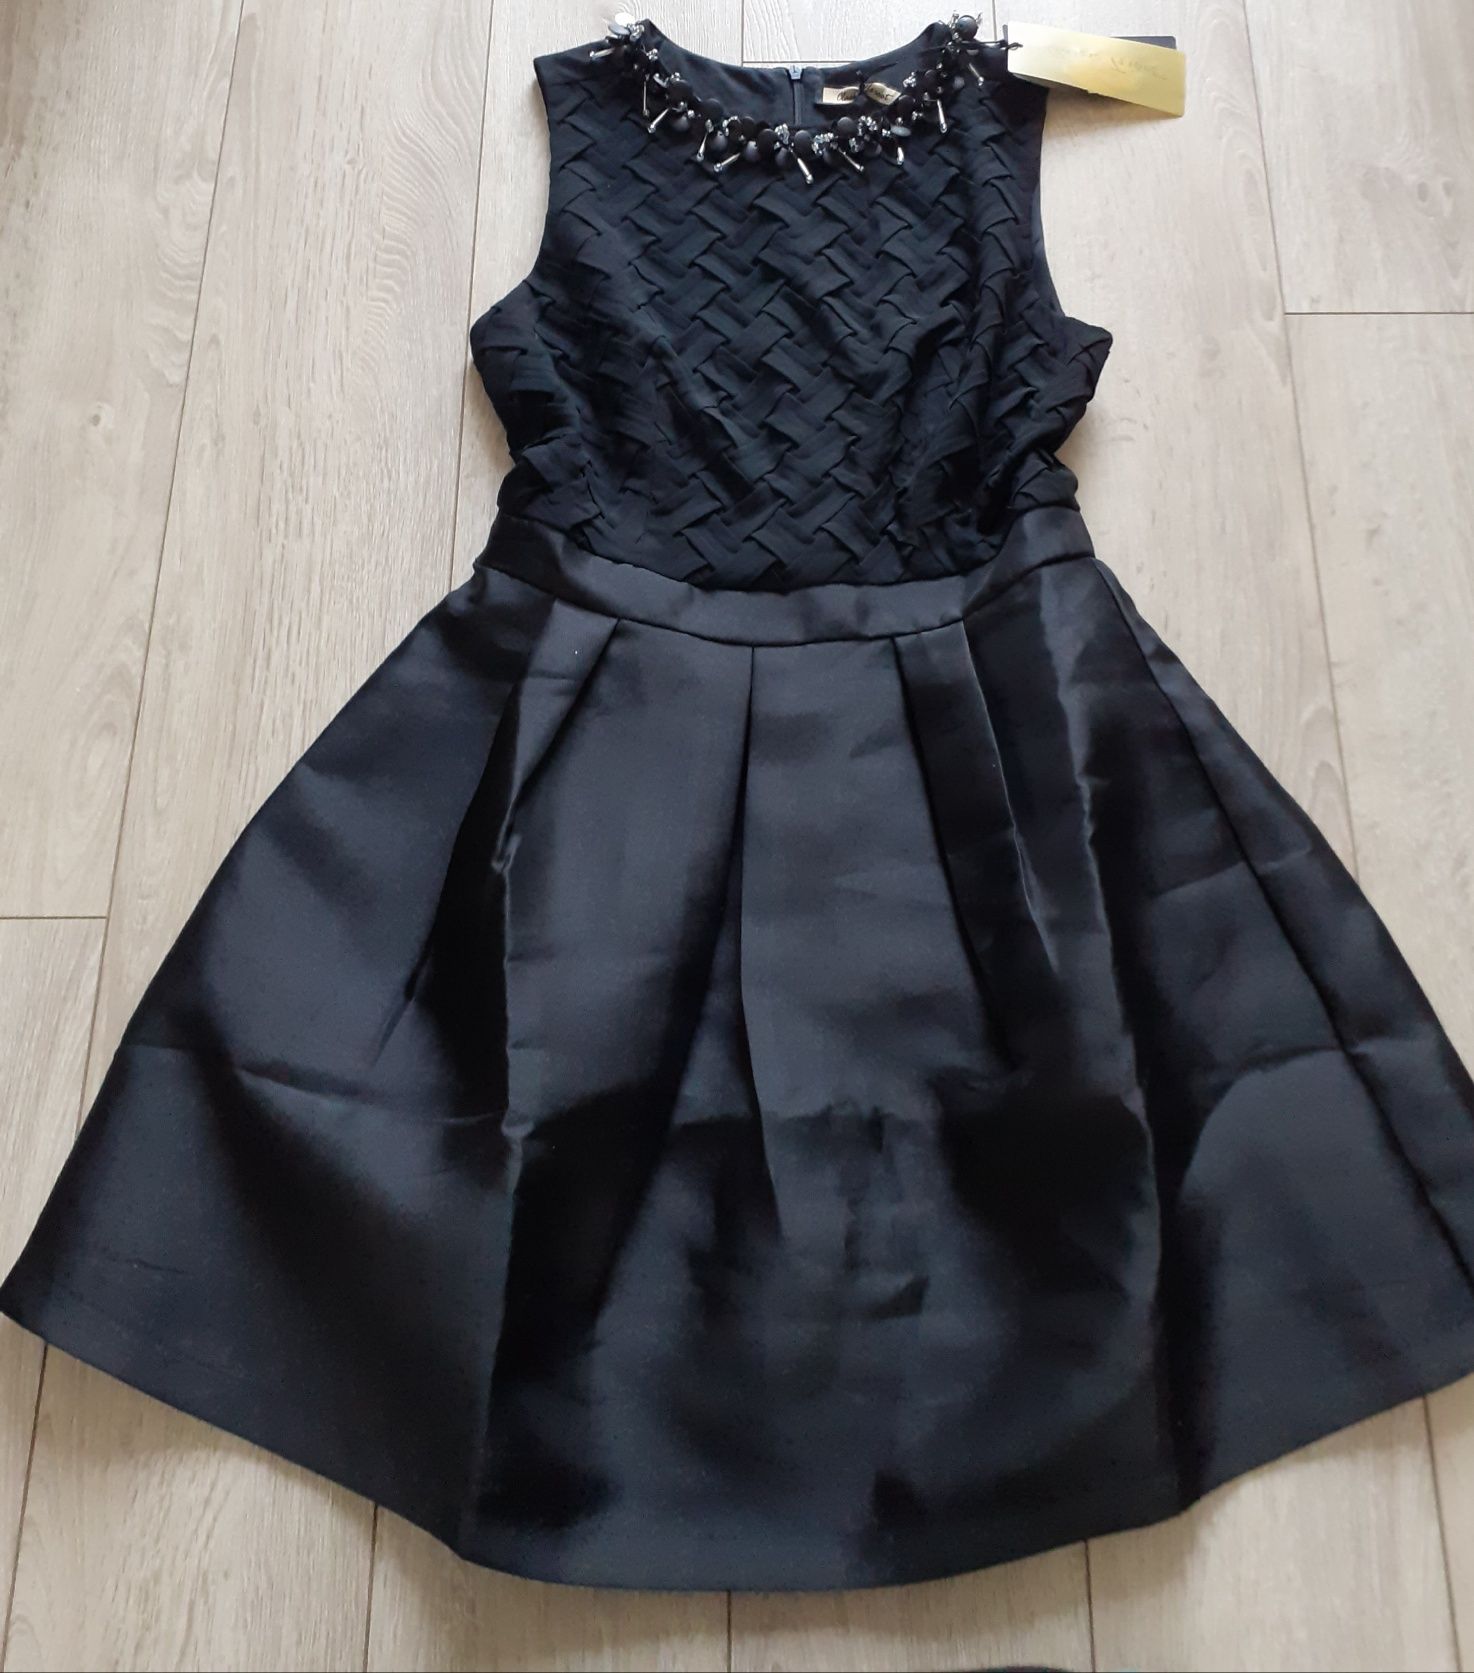 Elegancka czarna sukienka